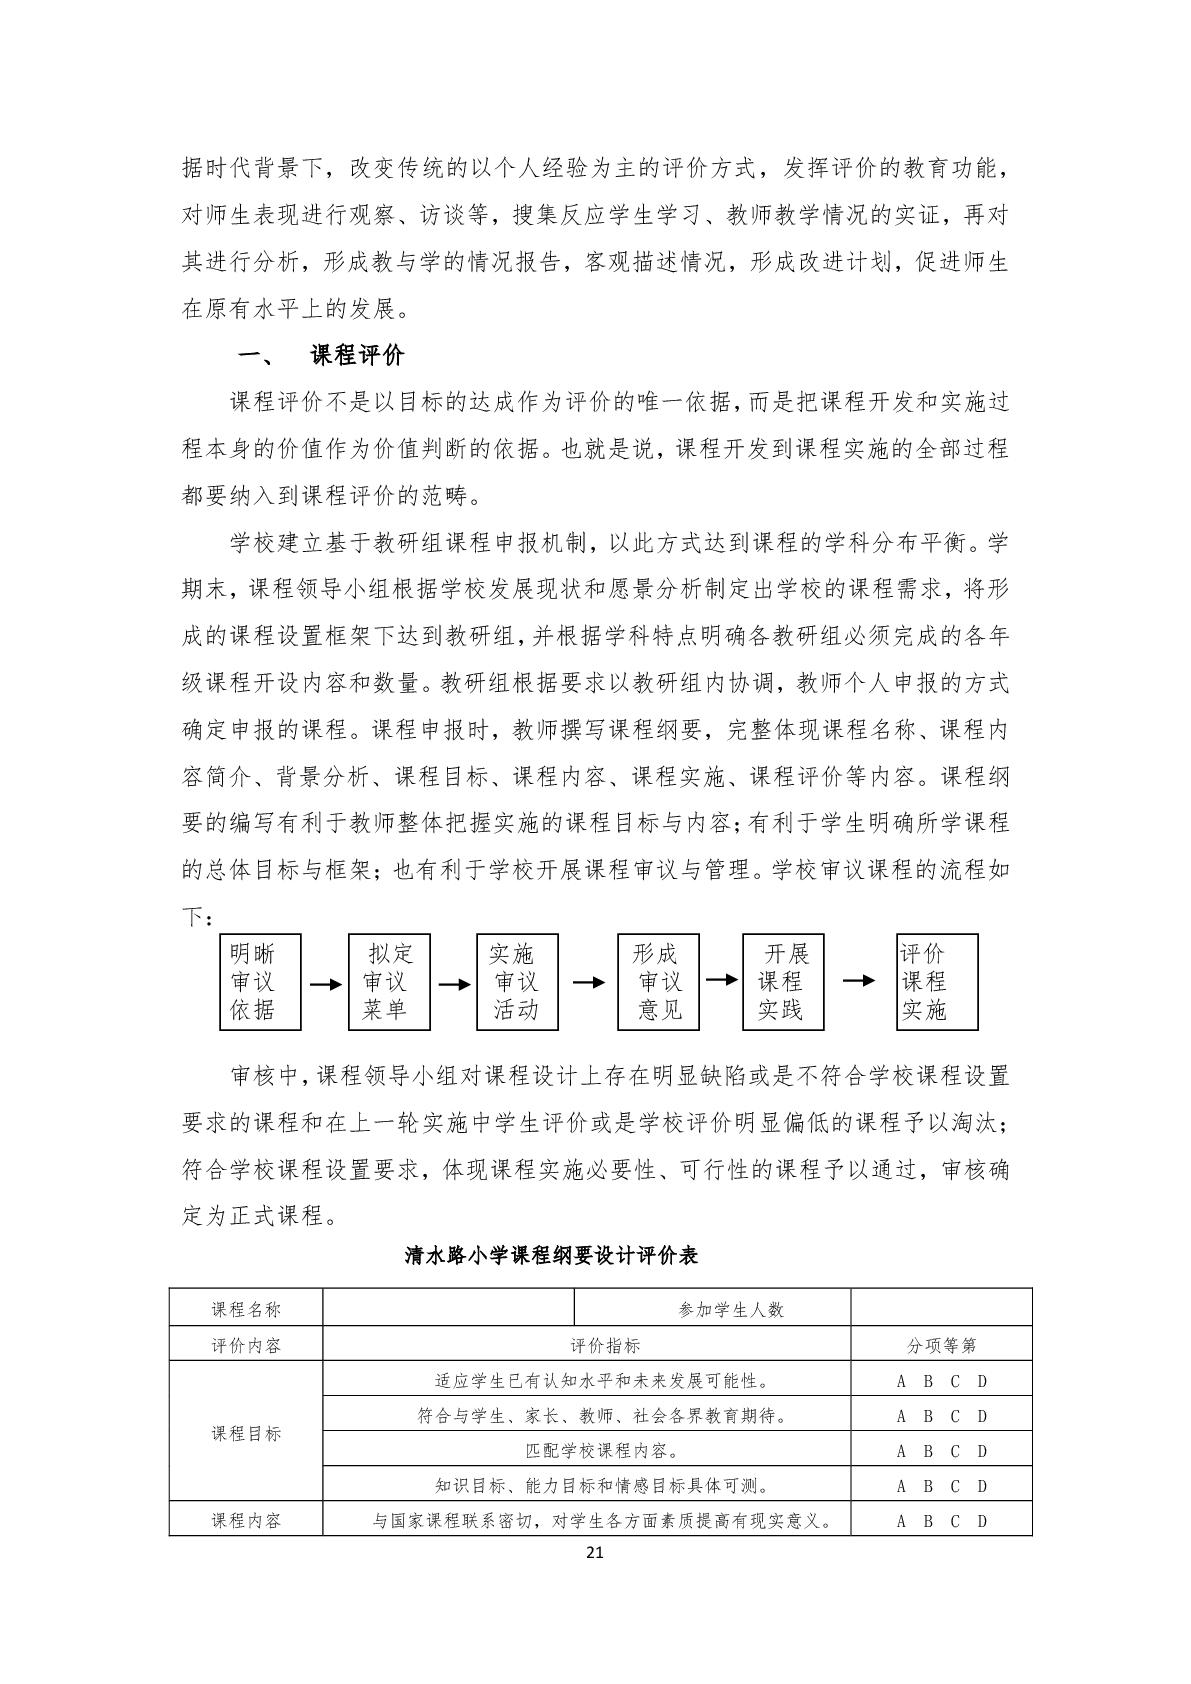 2.上海市嘉定区清水路小学2020学年度课程计划-021.jpg